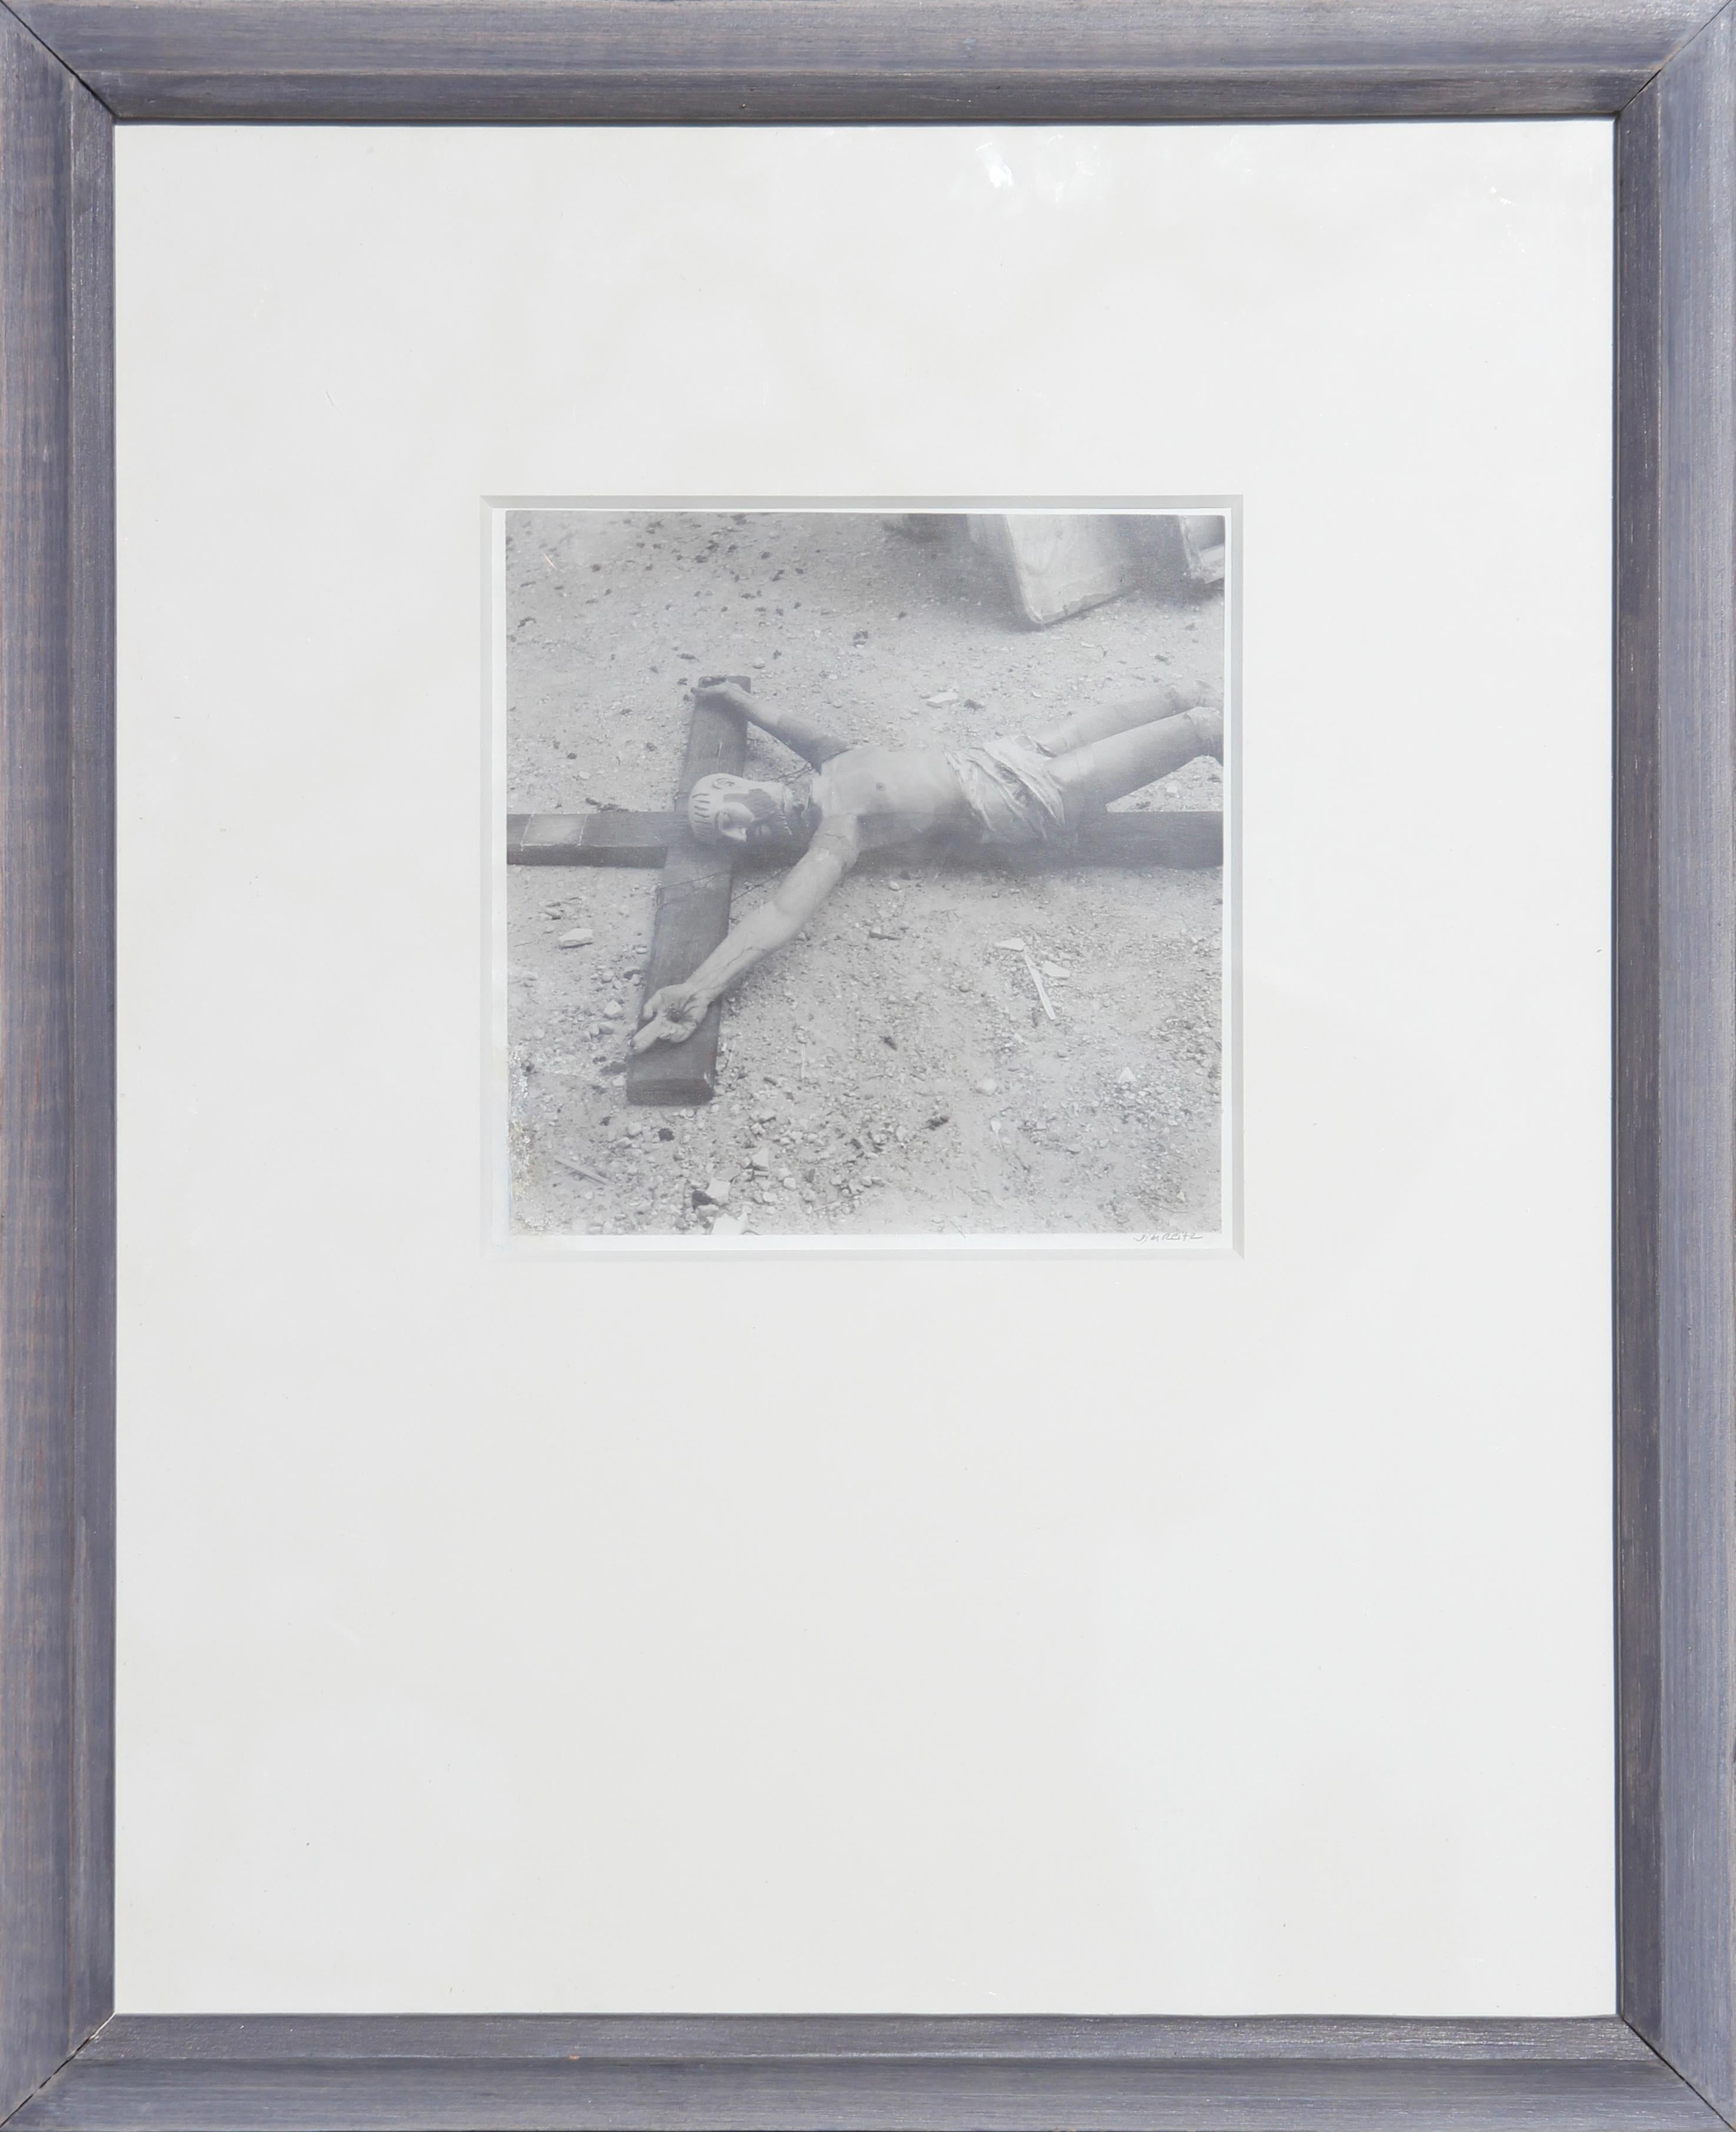 Schwarz-Weiß-Fotografie einer gefundenen Kruzifixskulptur auf dem Boden